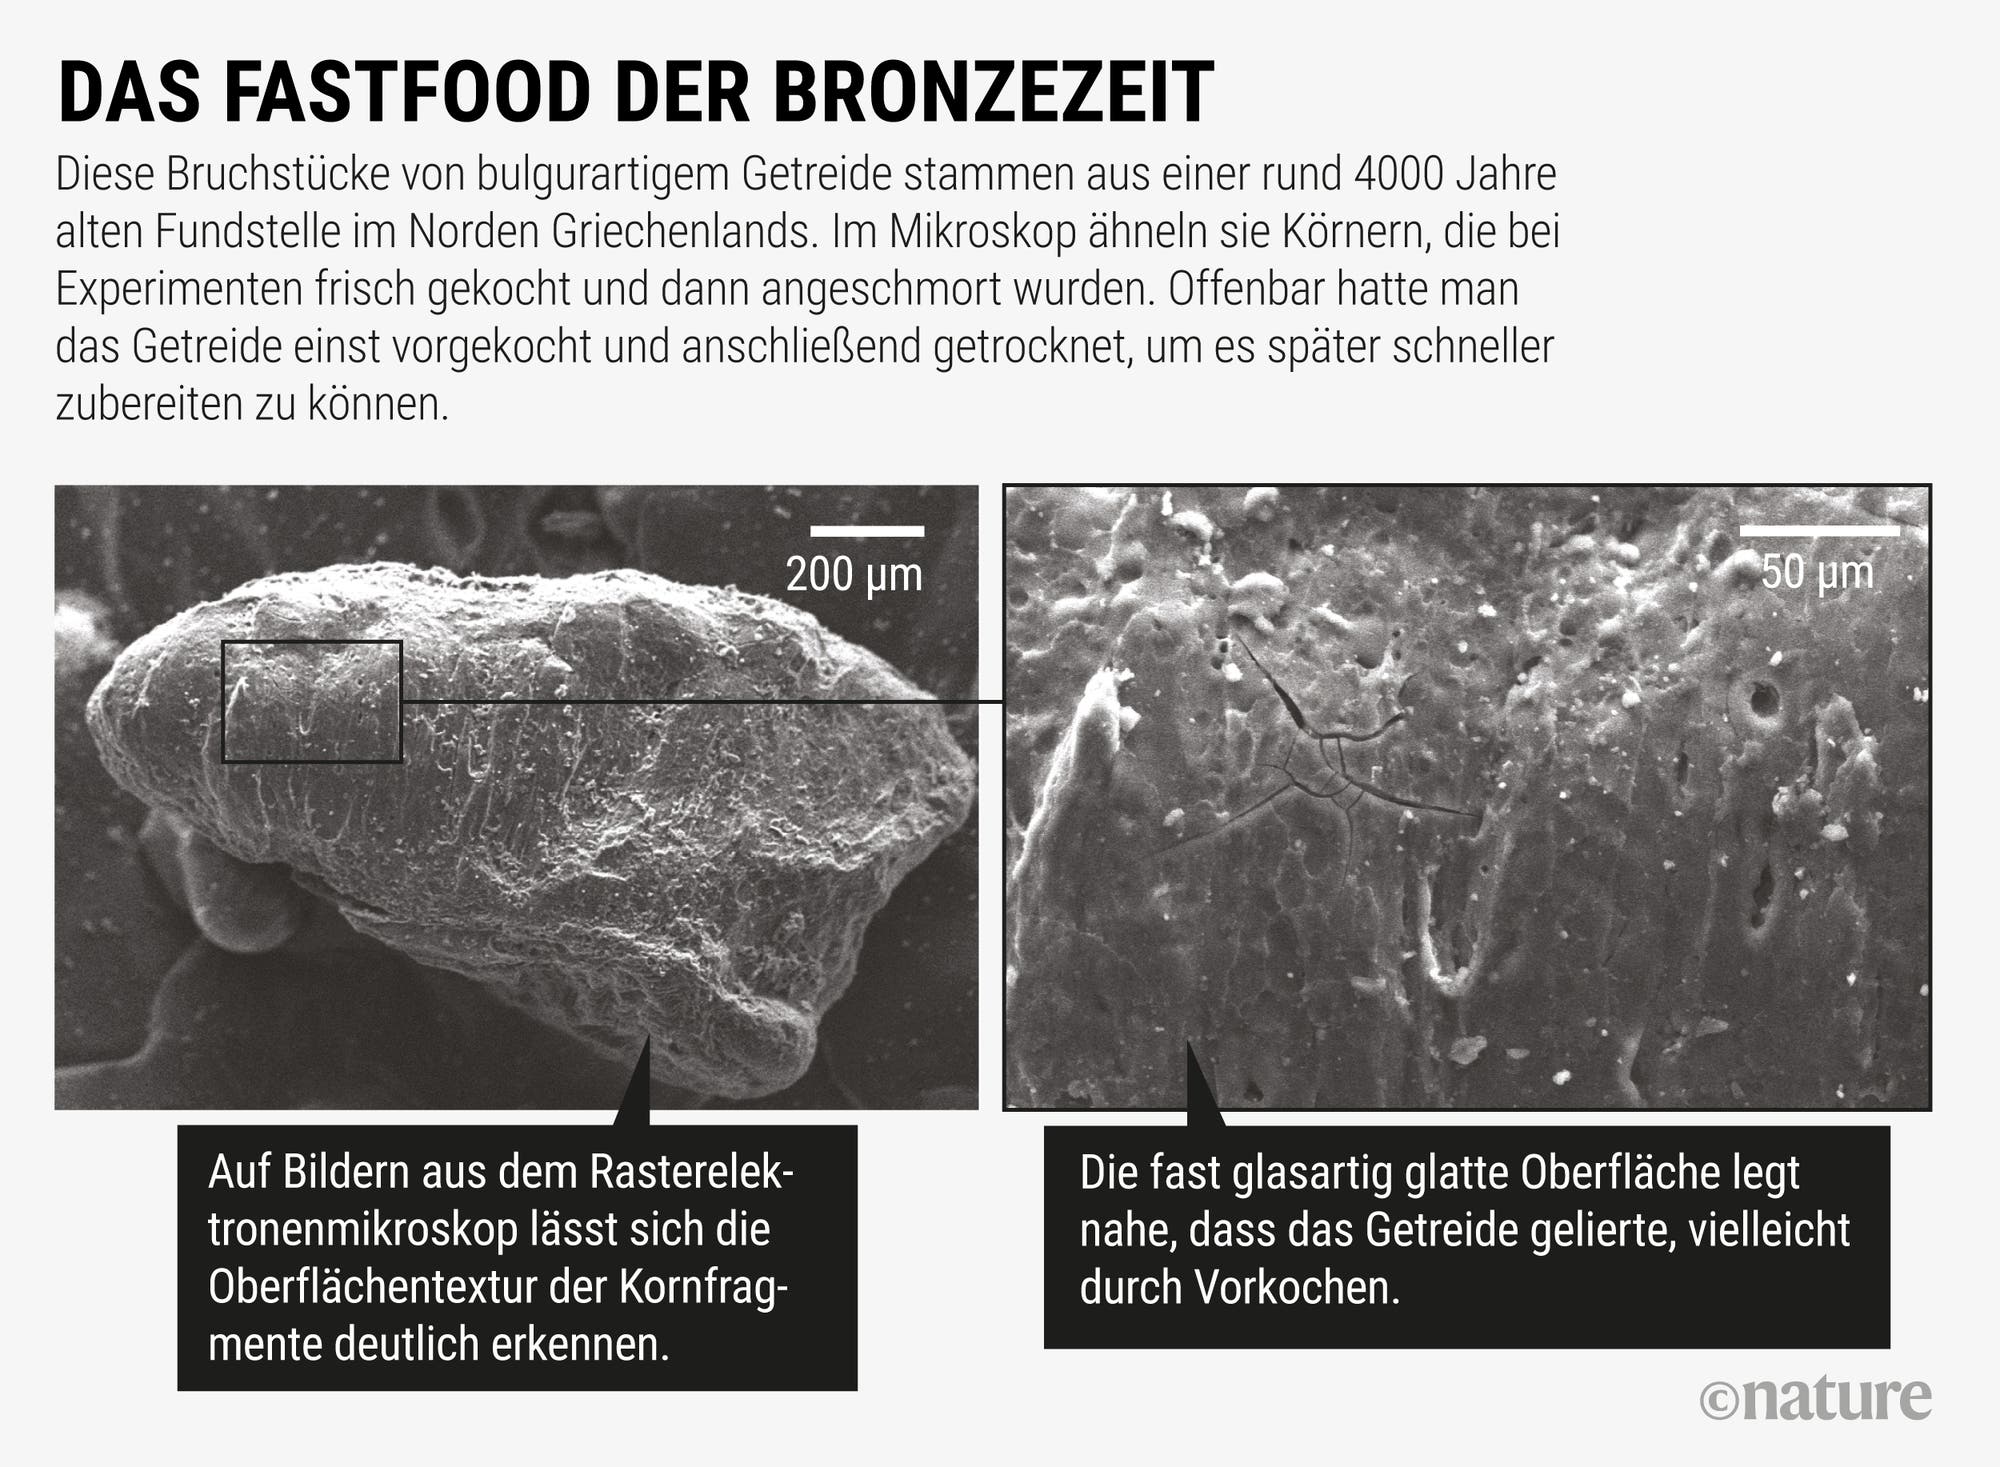 Das Fastfood der Bronzezeit